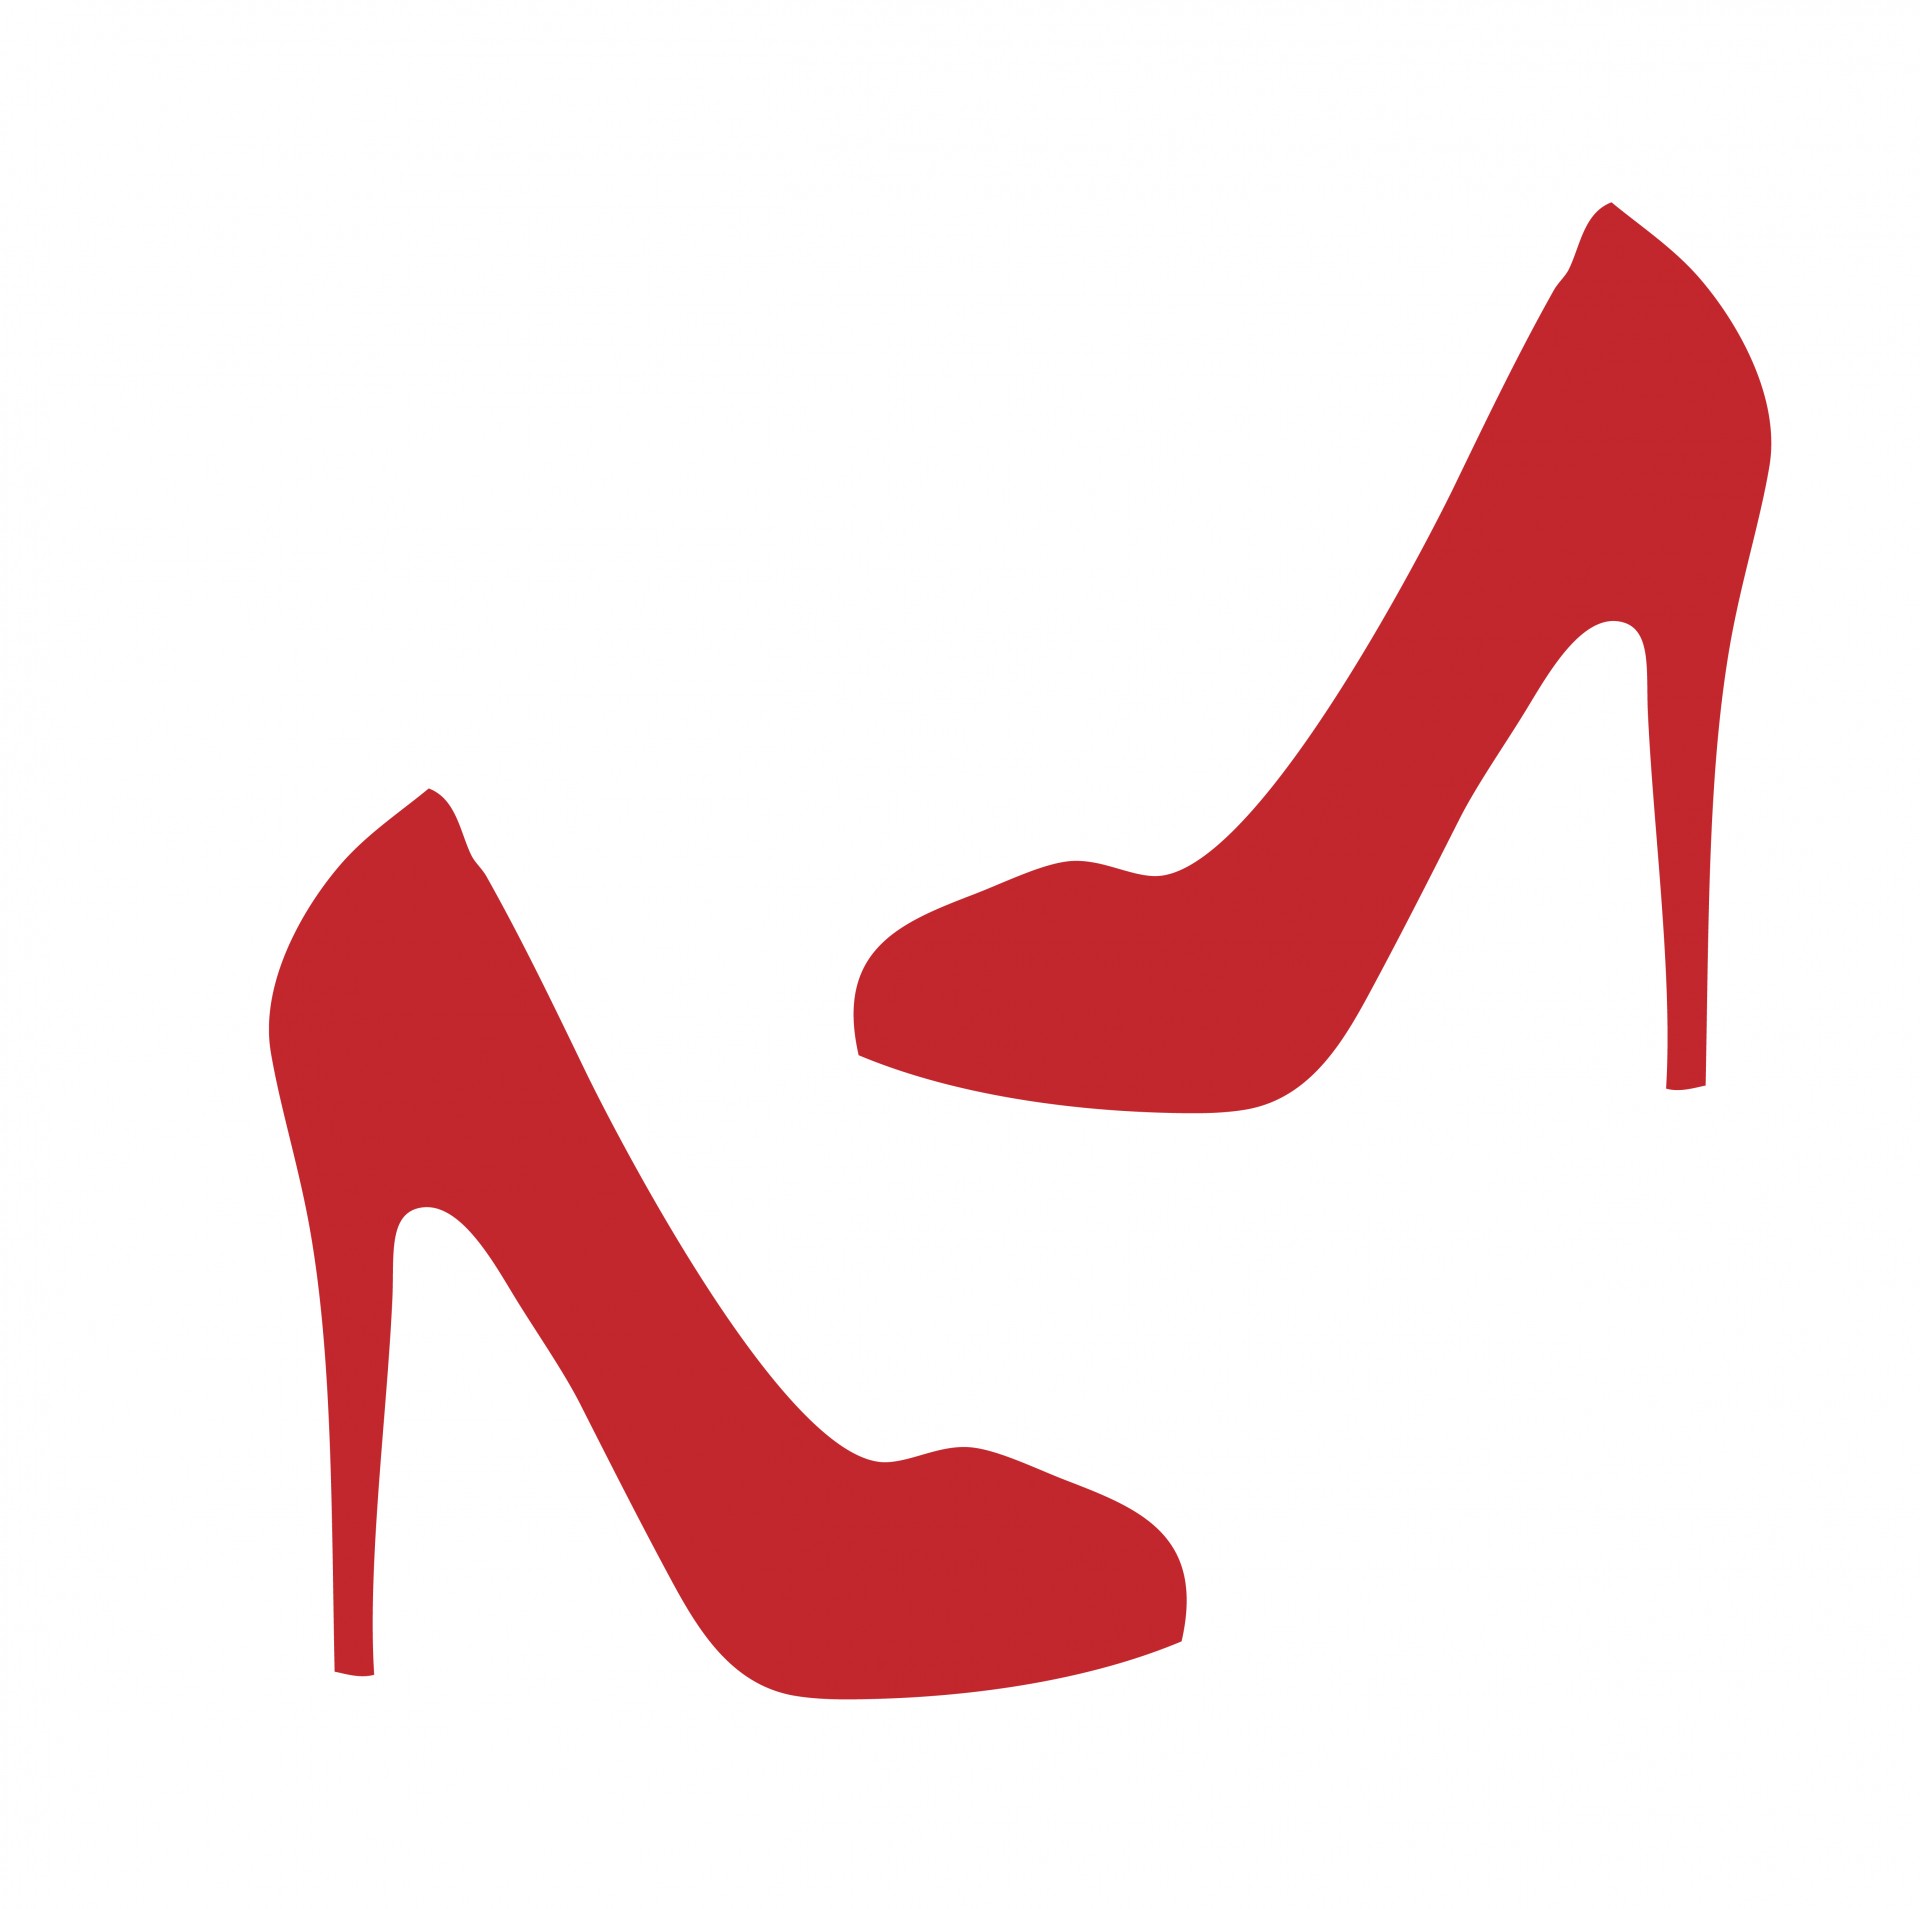 ... Red high heel shoe